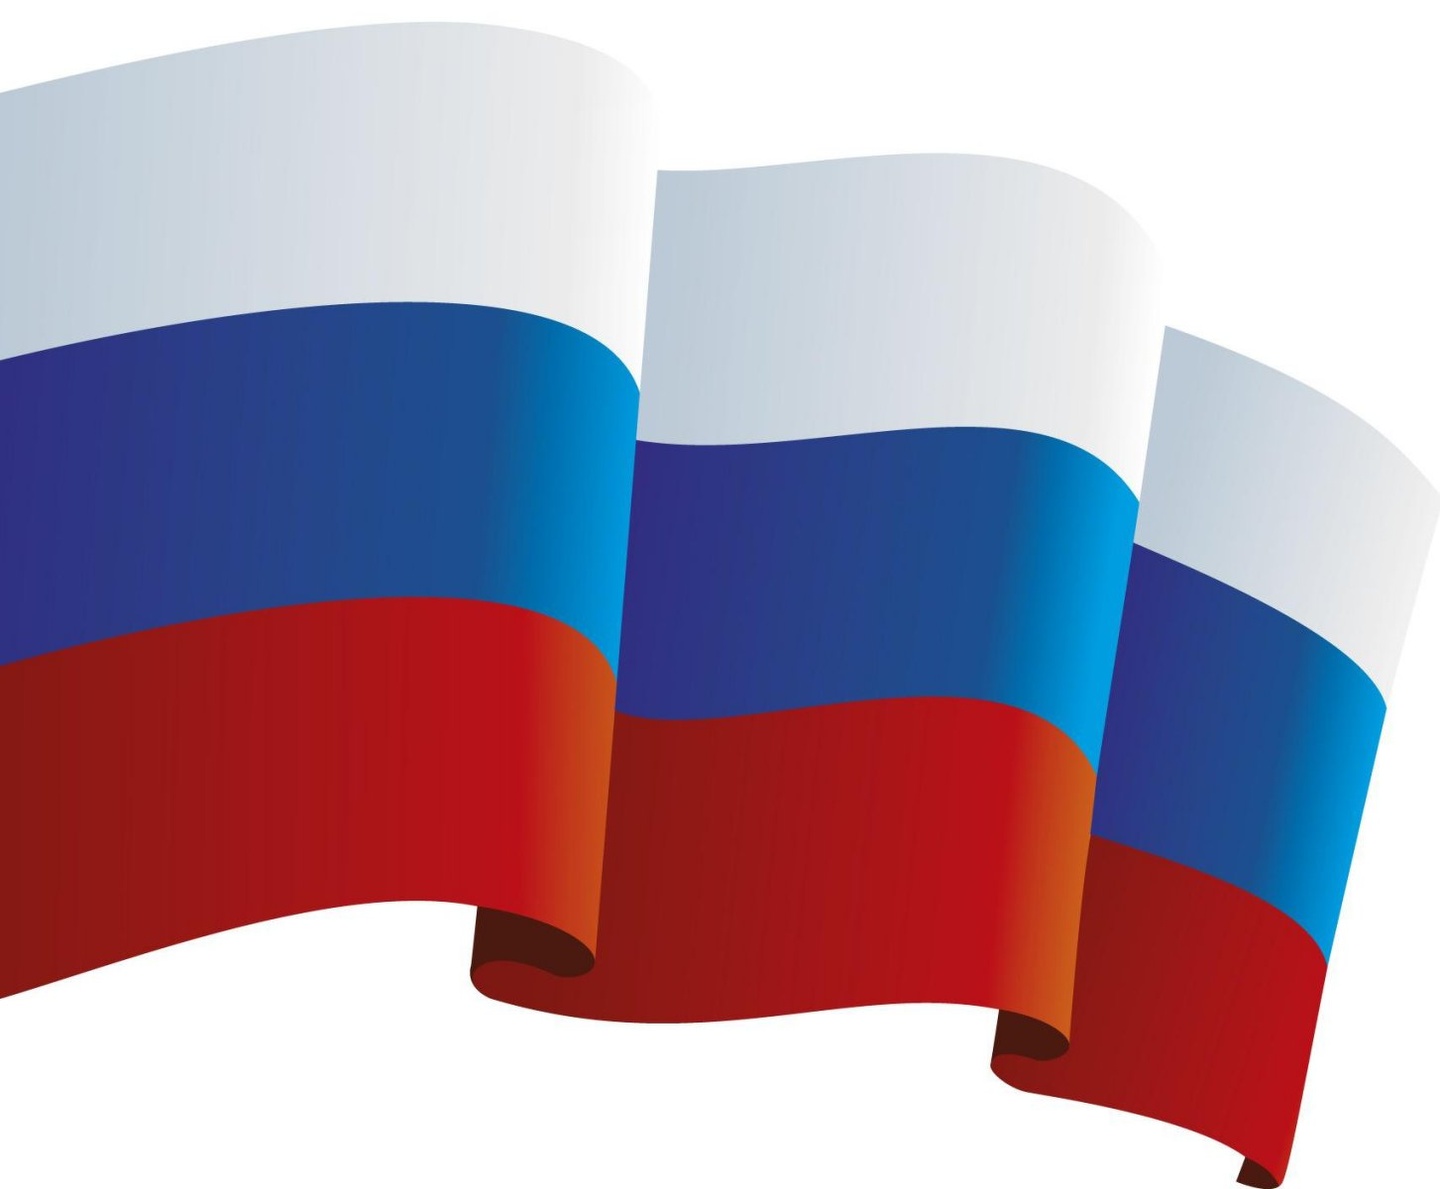 22 августа в России отметят день государственного флага.